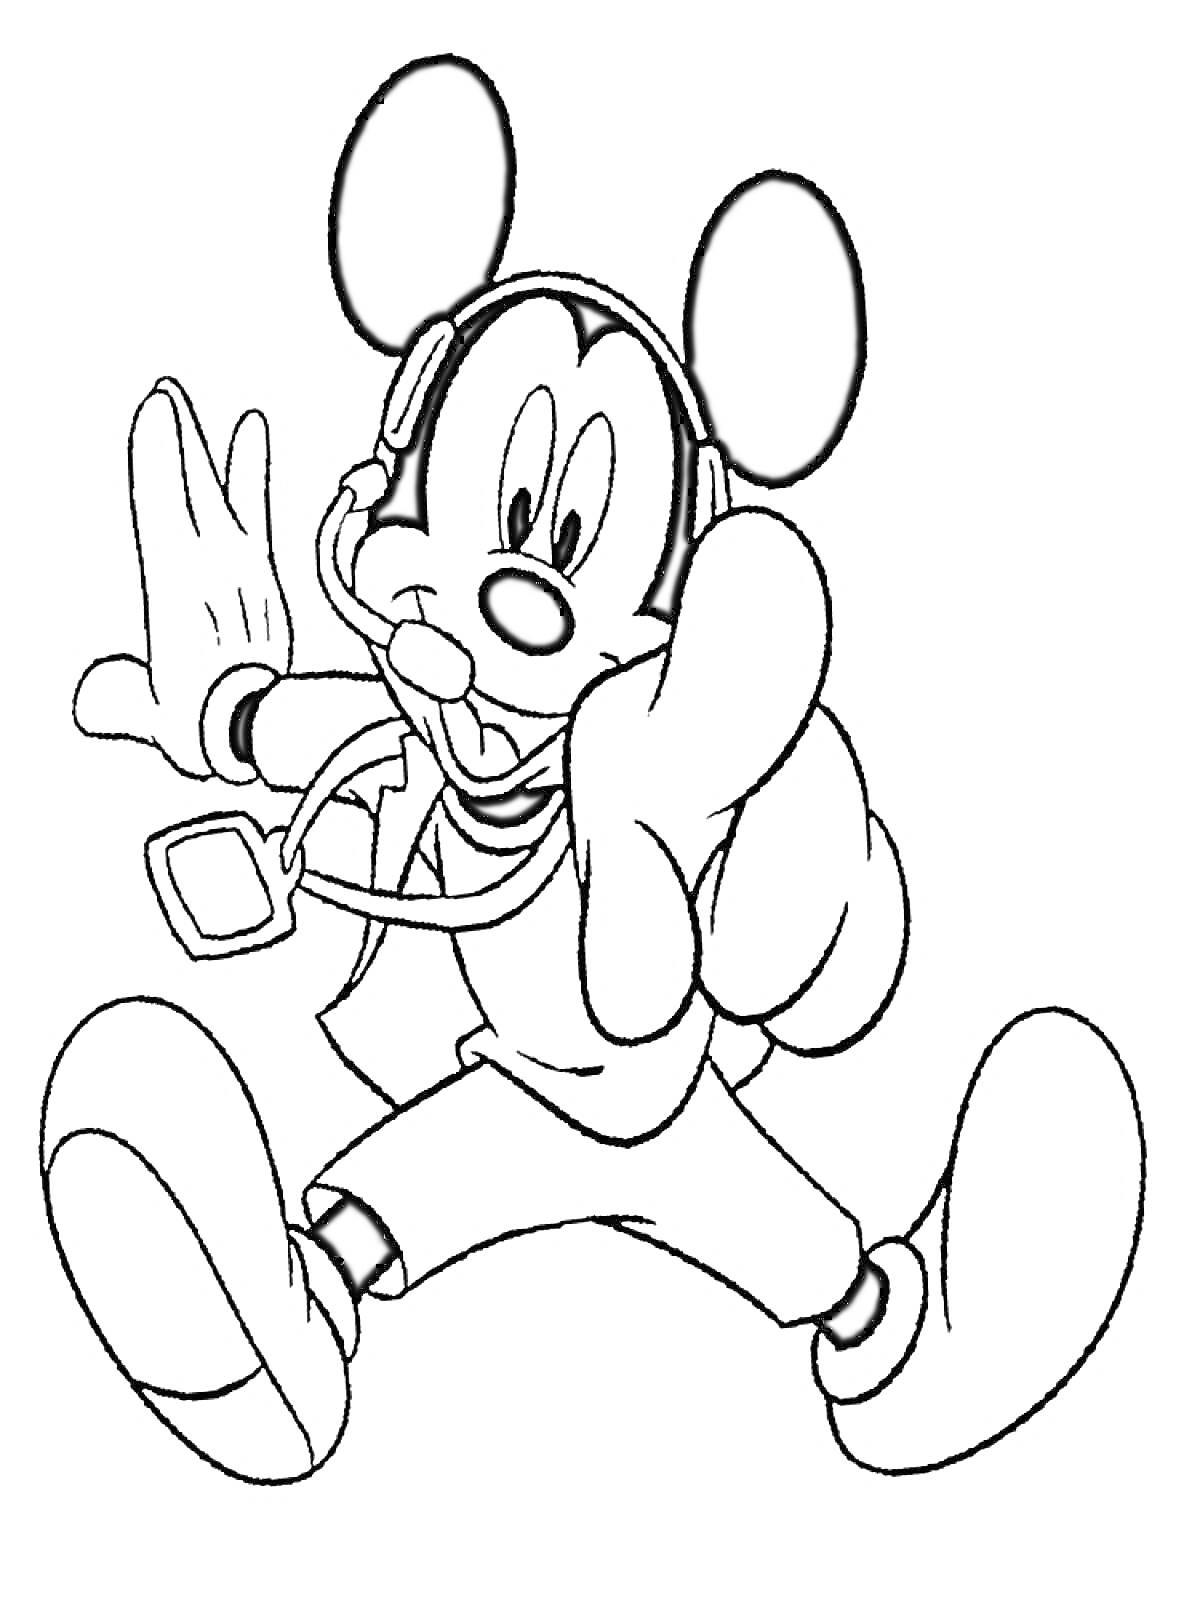 Раскраска Микки Маус с гарнитурой, в пиджаке, в кроссовках, показывает указательным пальцем